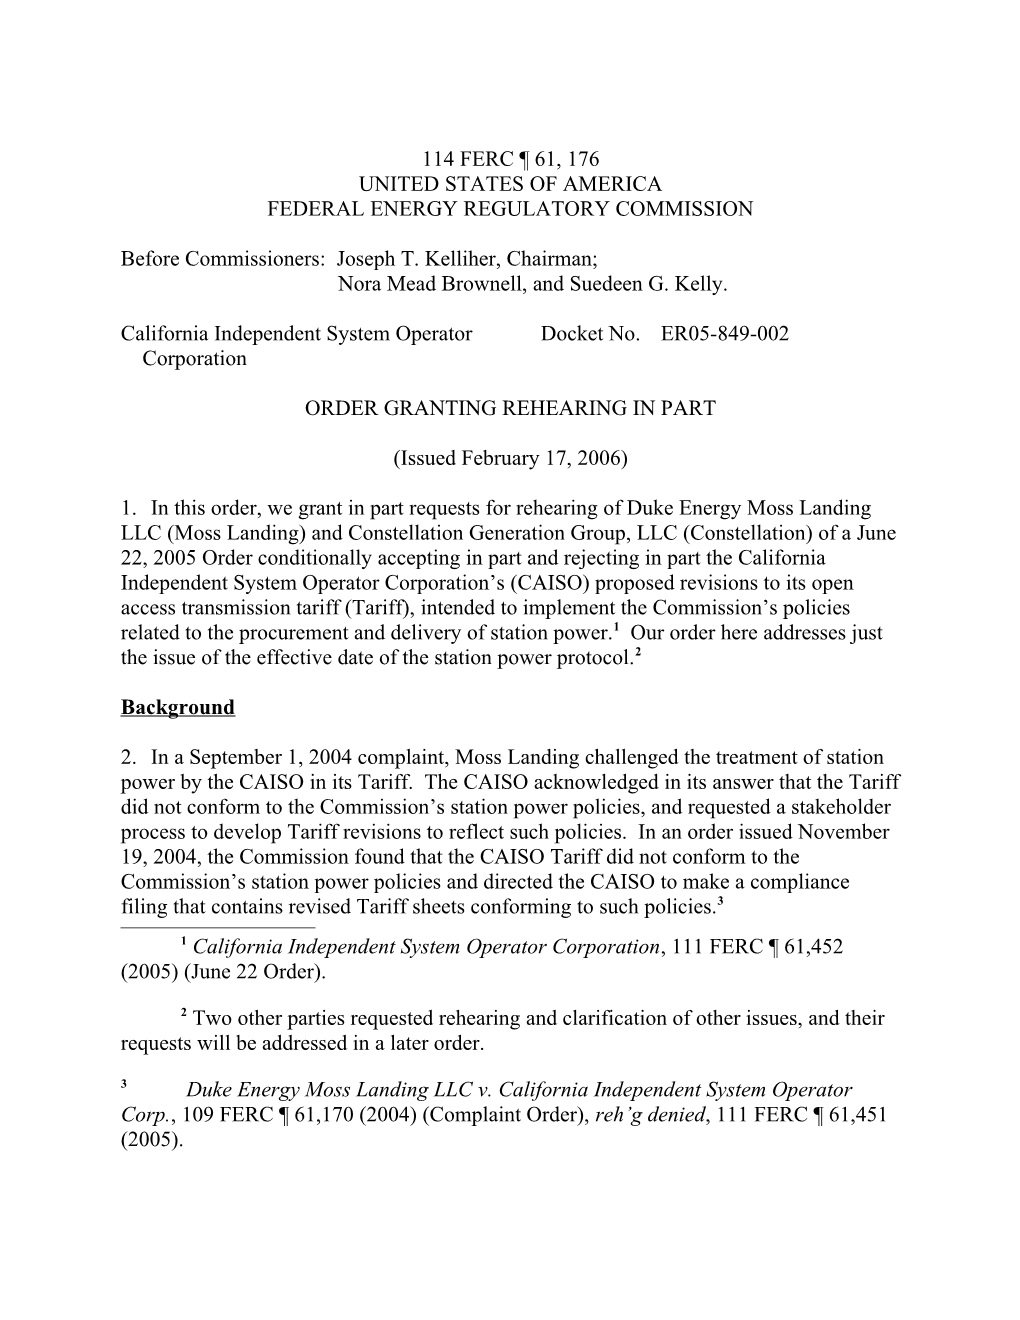 February 17, 2006 FERC Order Granting Rehearing in Part in Docket No. ER05-849-002